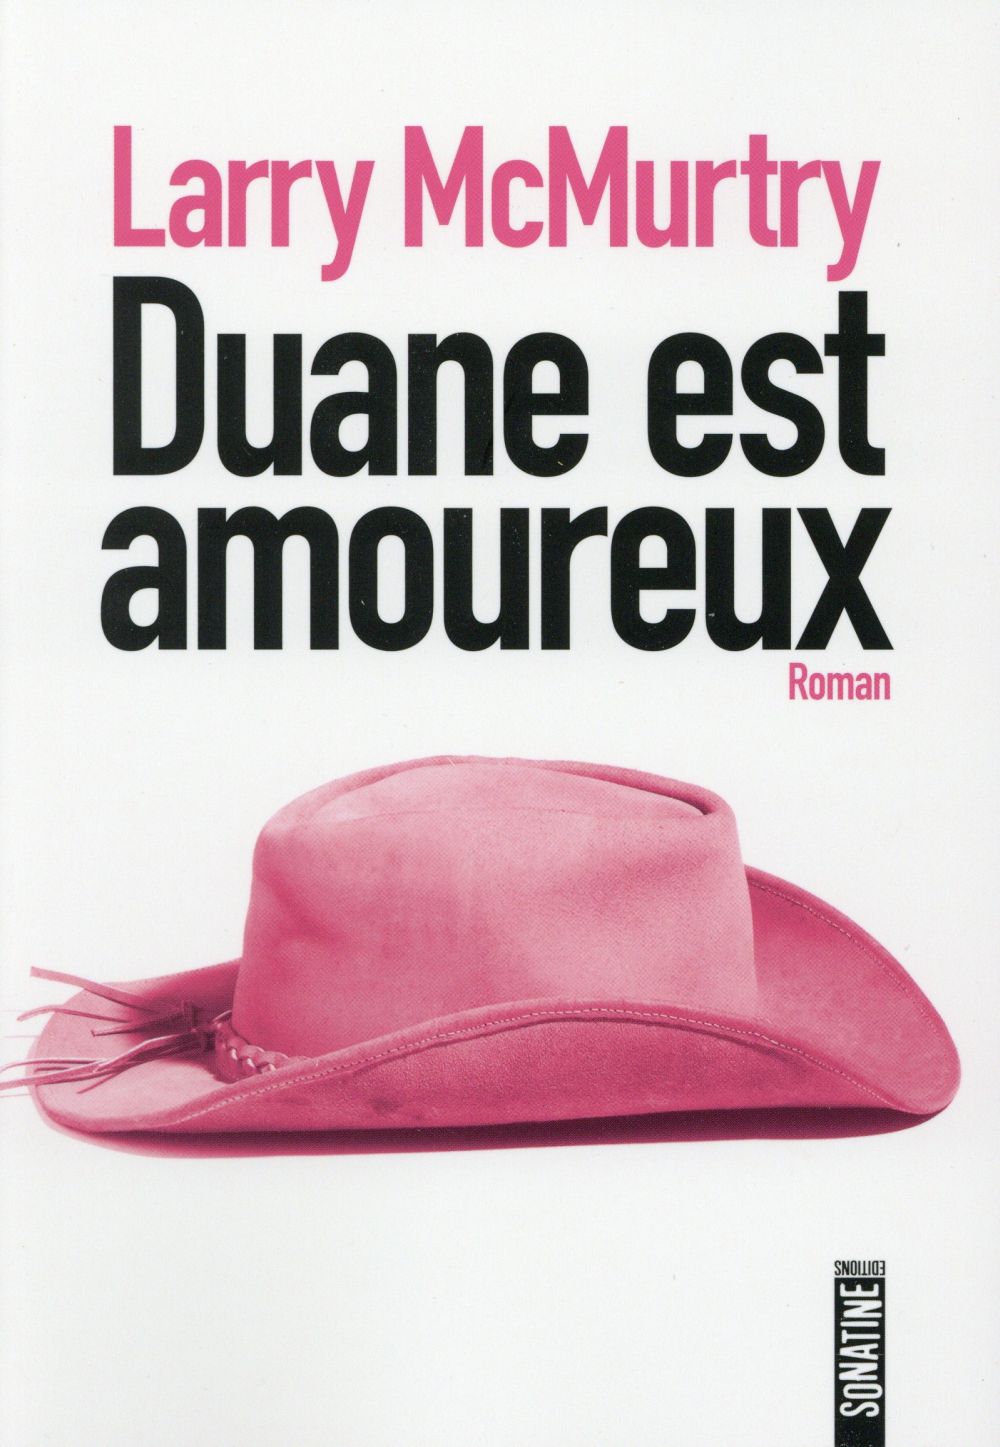 "Duane est amoureux" de Larry McMurtry - la chronique #19 du Club des Explorateurs